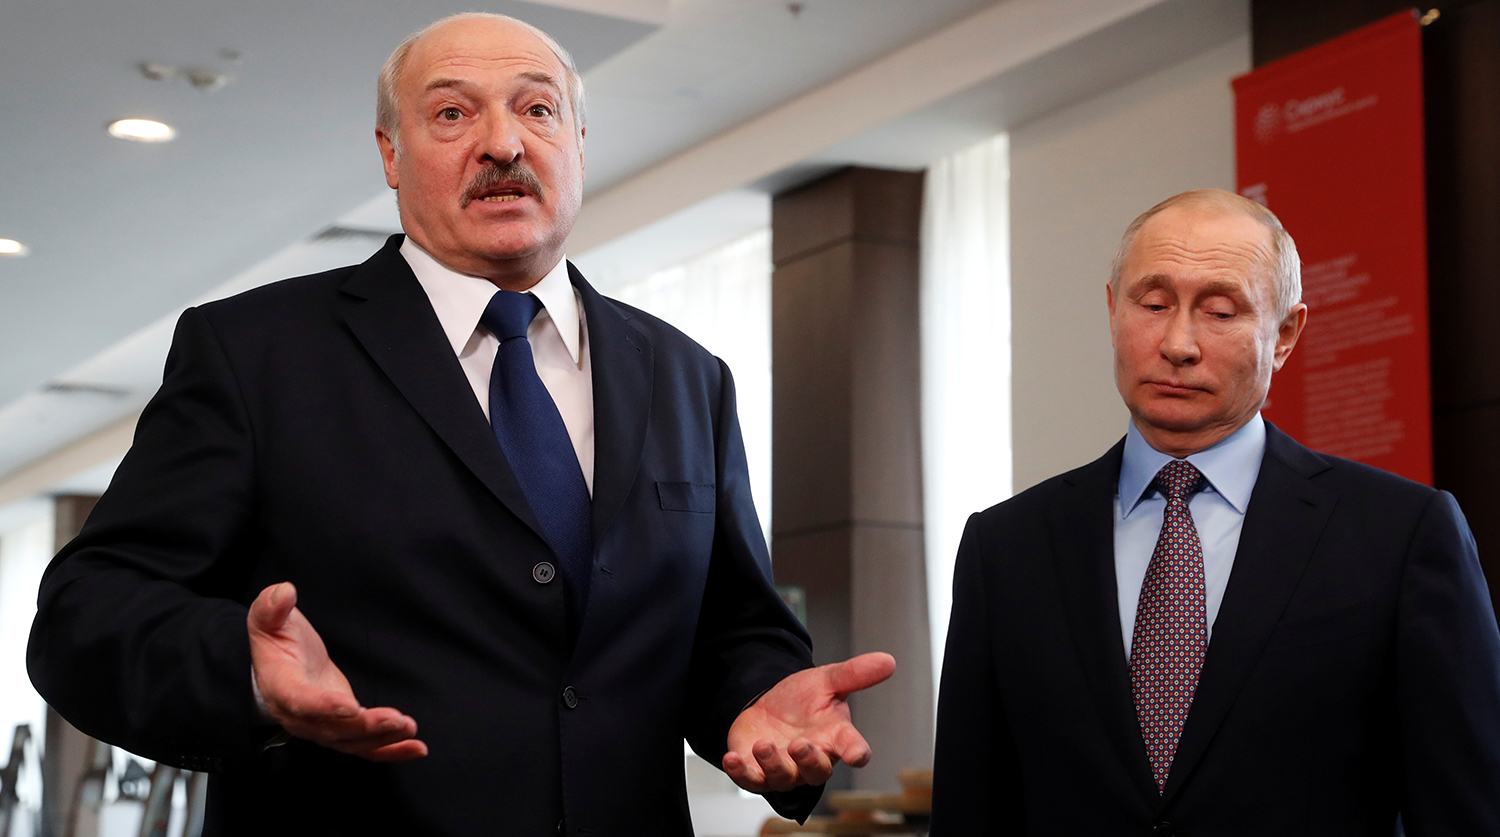 Лукашенко и Путин 2020 года не хуже самих себя в 2000-м году, а вот общество изменилось